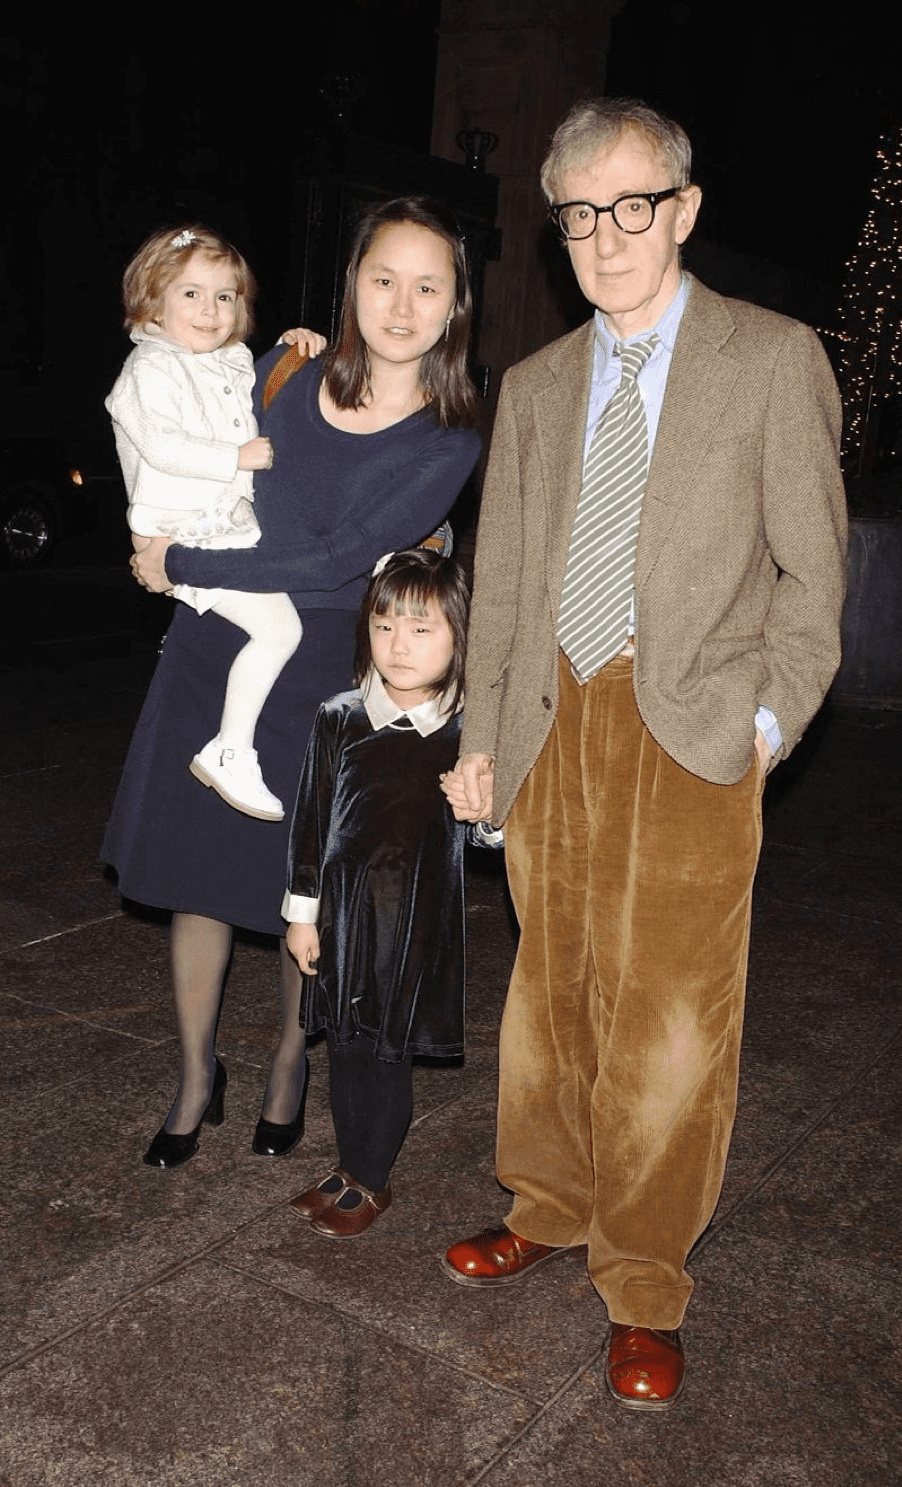 Woody Allen und seine Familie Tochter Manzie, Ehefrau Soon-Yi und Tochter am 31.12.93 in New York. | Quelle: Getty Images